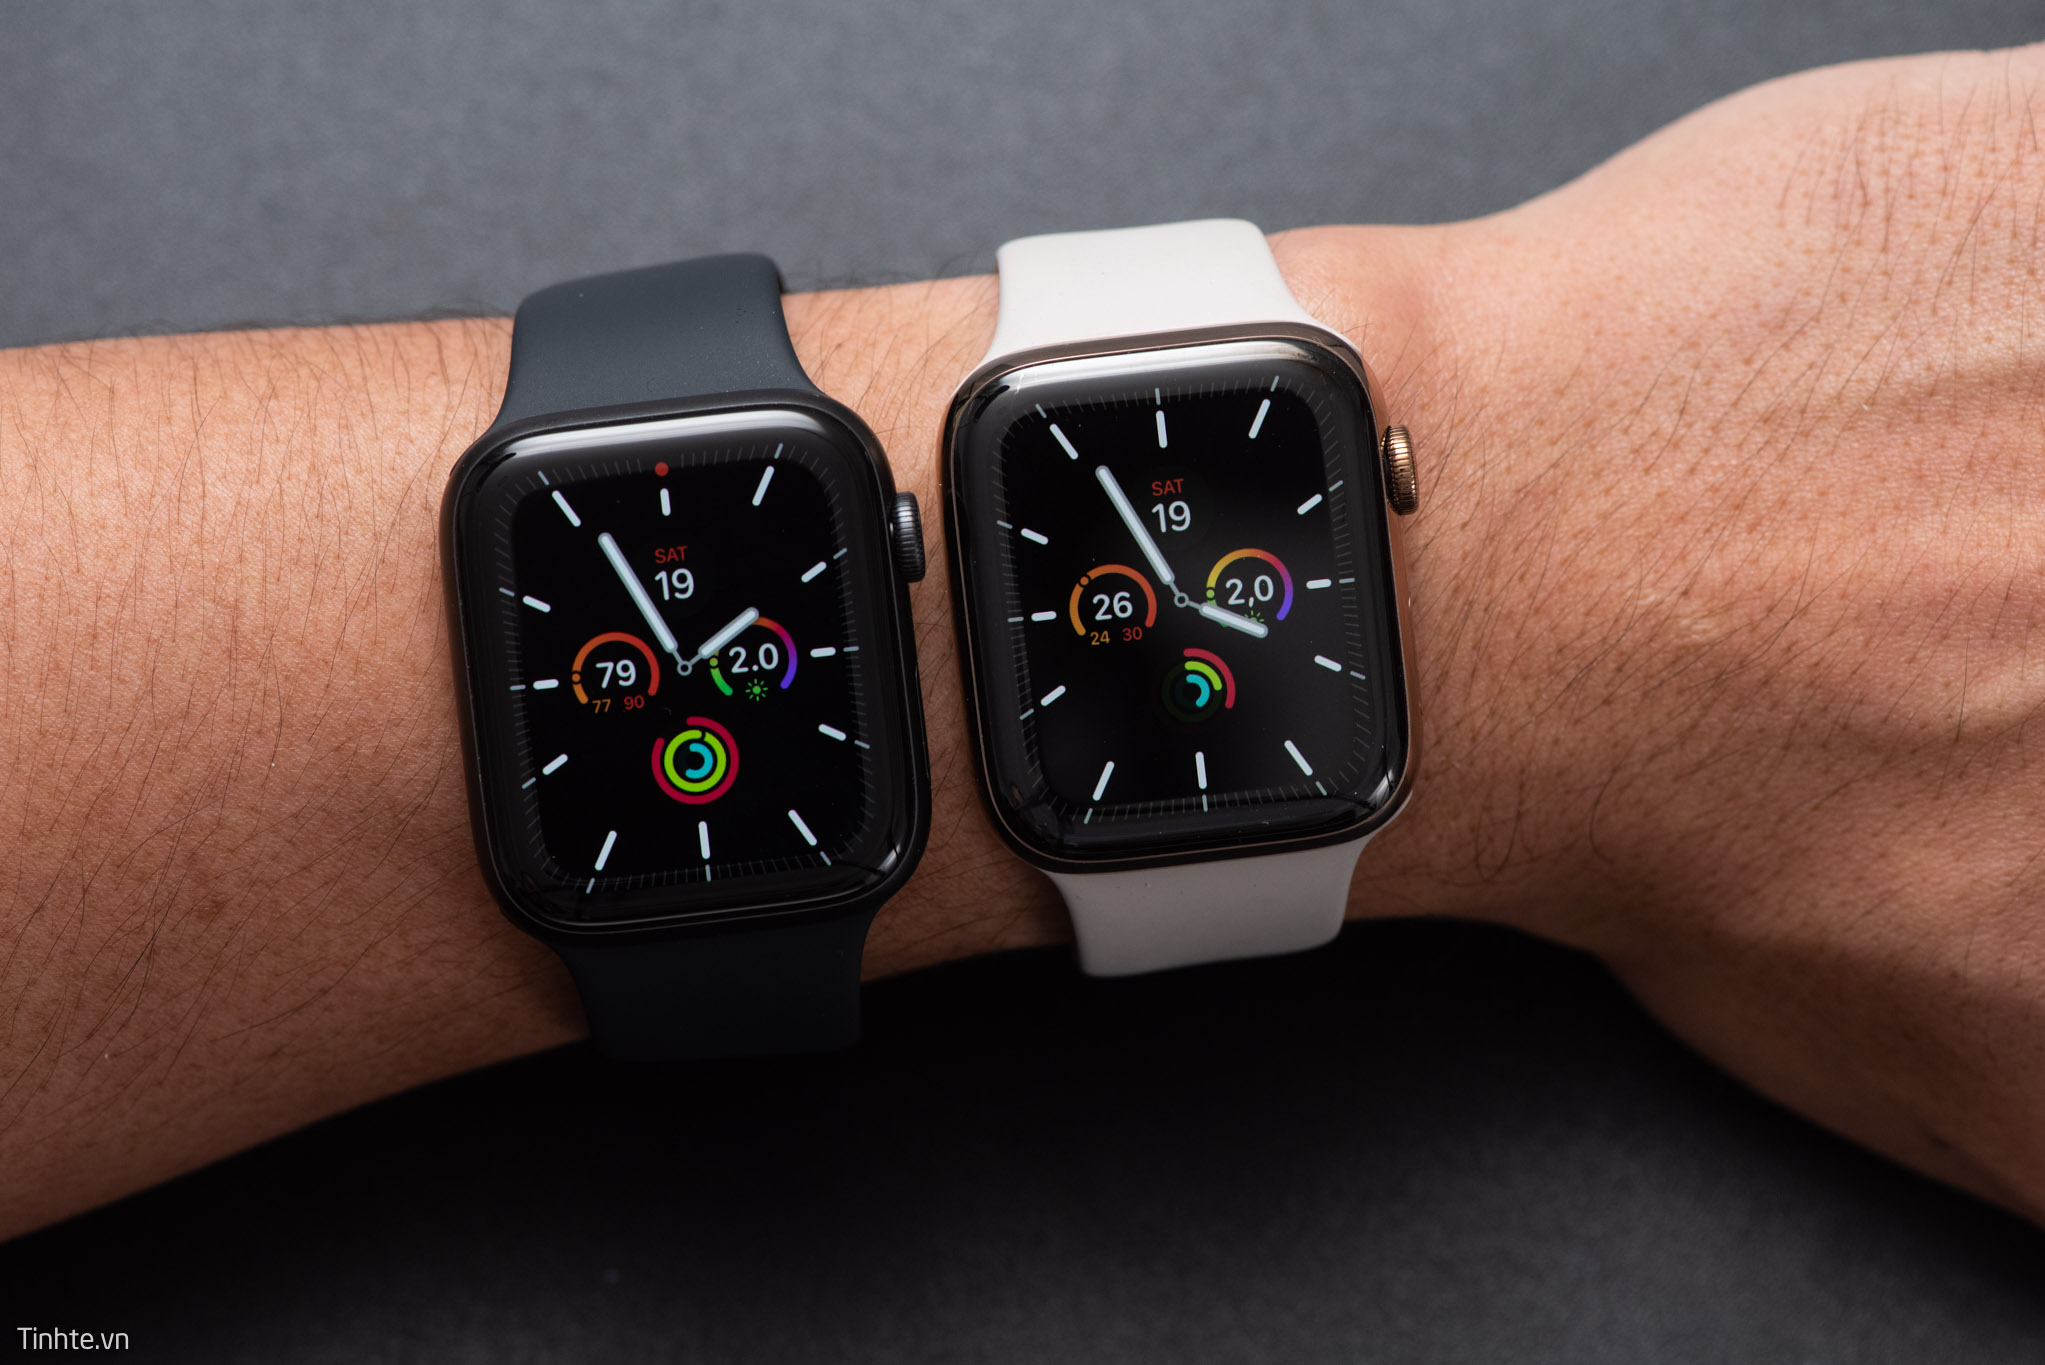 Trải nghiệm màn hình luôn sáng trên Apple Watch Series 6, sáng gấp 2,5 lần trên Series 5?